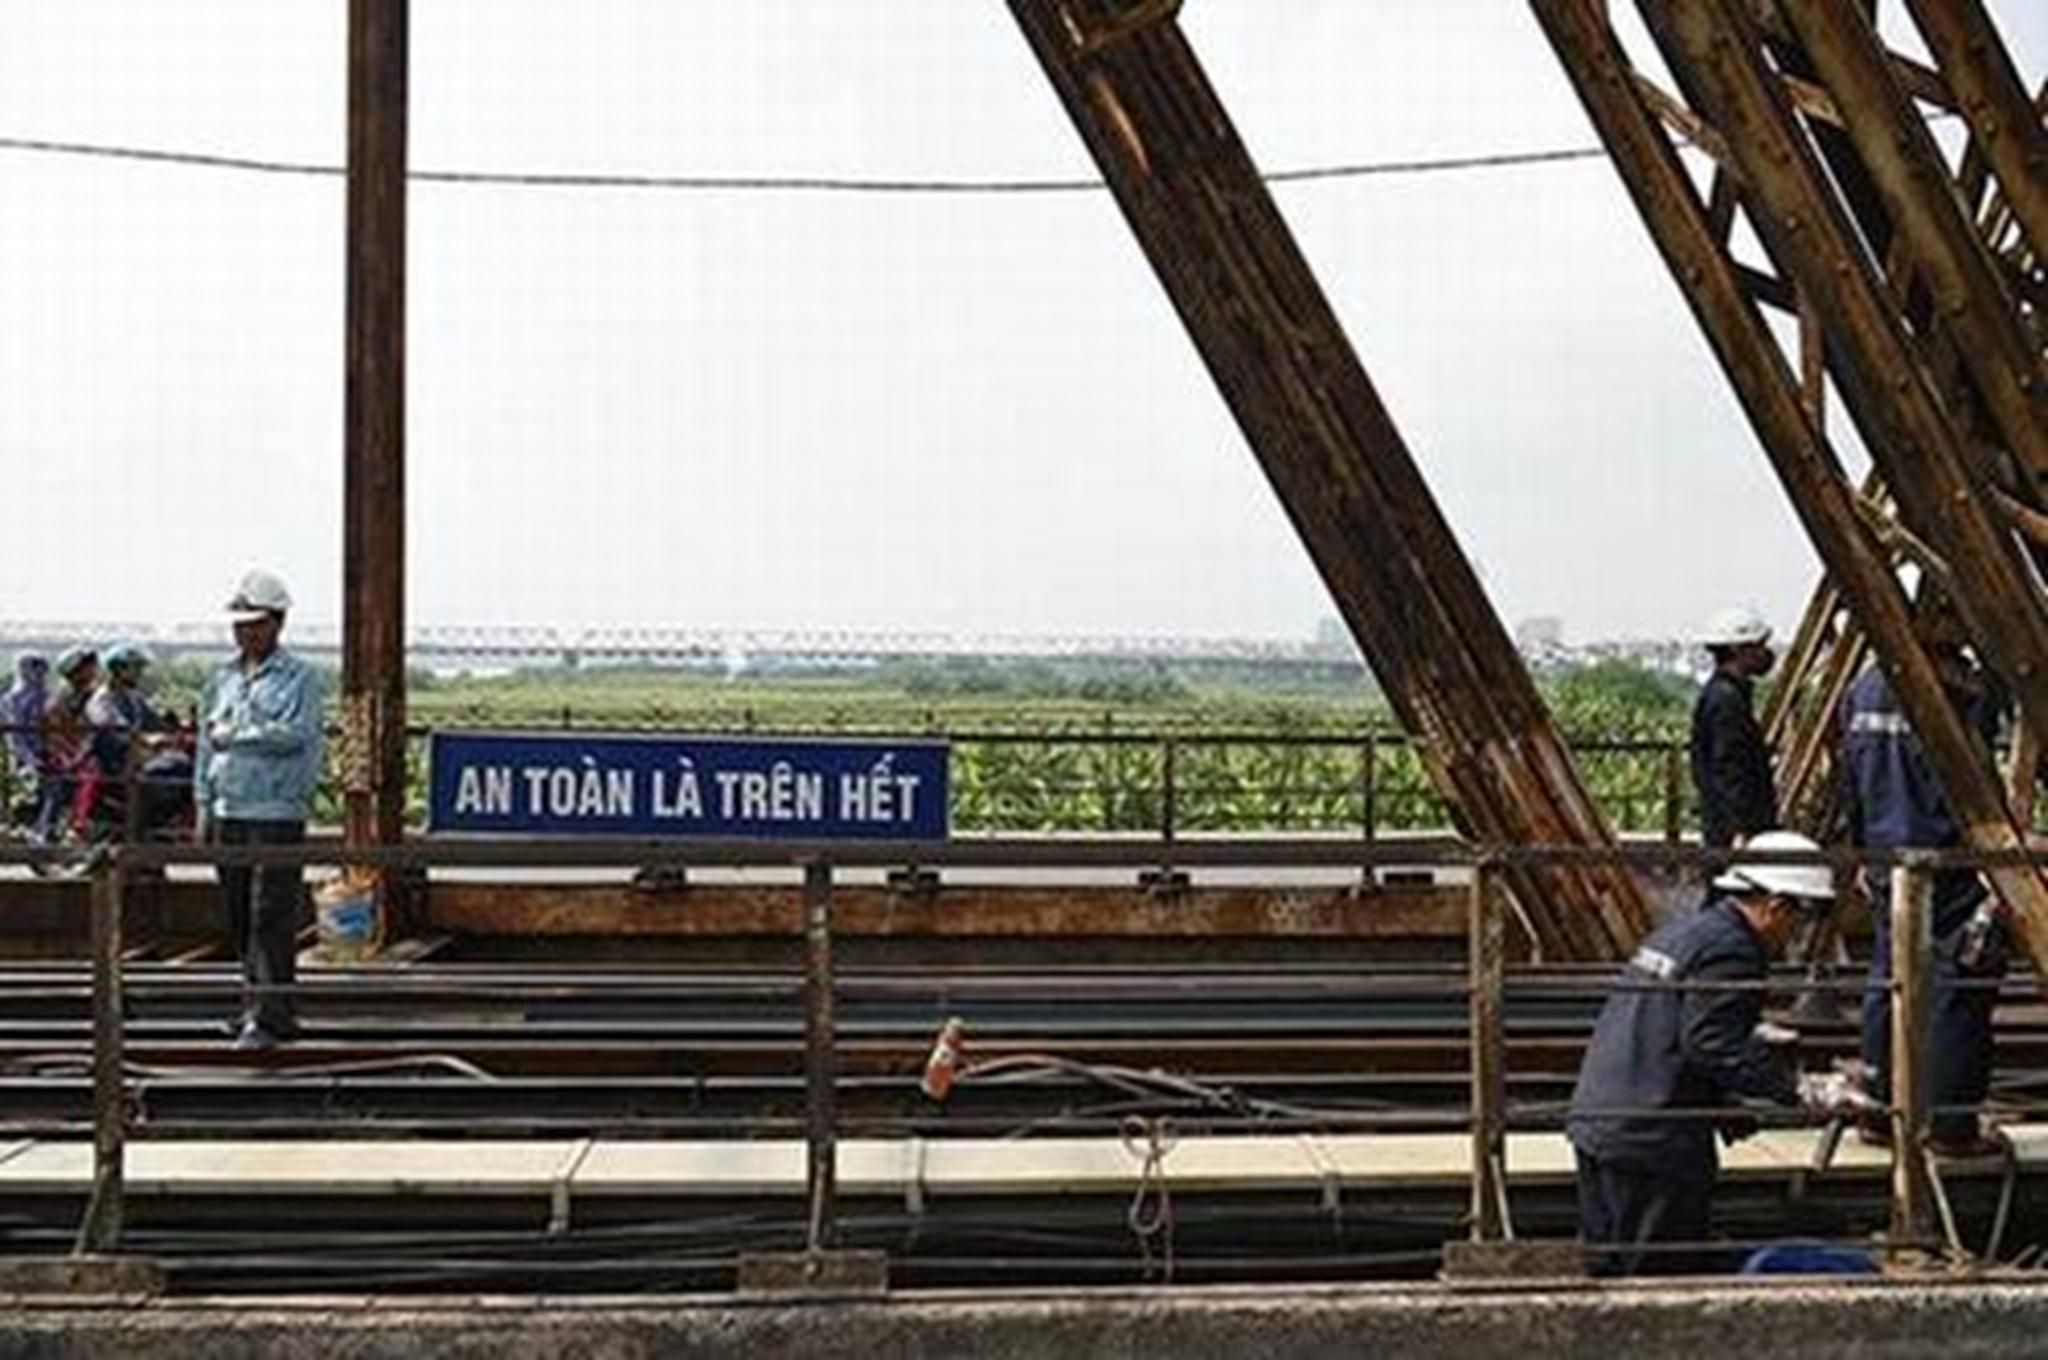 Trong giai đoạn 1 cầu Long Biên sẽ được gia cố để đảm bảo an toàn, phục vụ vận tải đường sắt đến năm 2020; giai đoạn 2, cầu sẽ được khôi phục cải tạo thành đường bộ đô thị sau khi dự án đường sắt đô thị Hà Nội tuyến số 1 được hoàn thành.